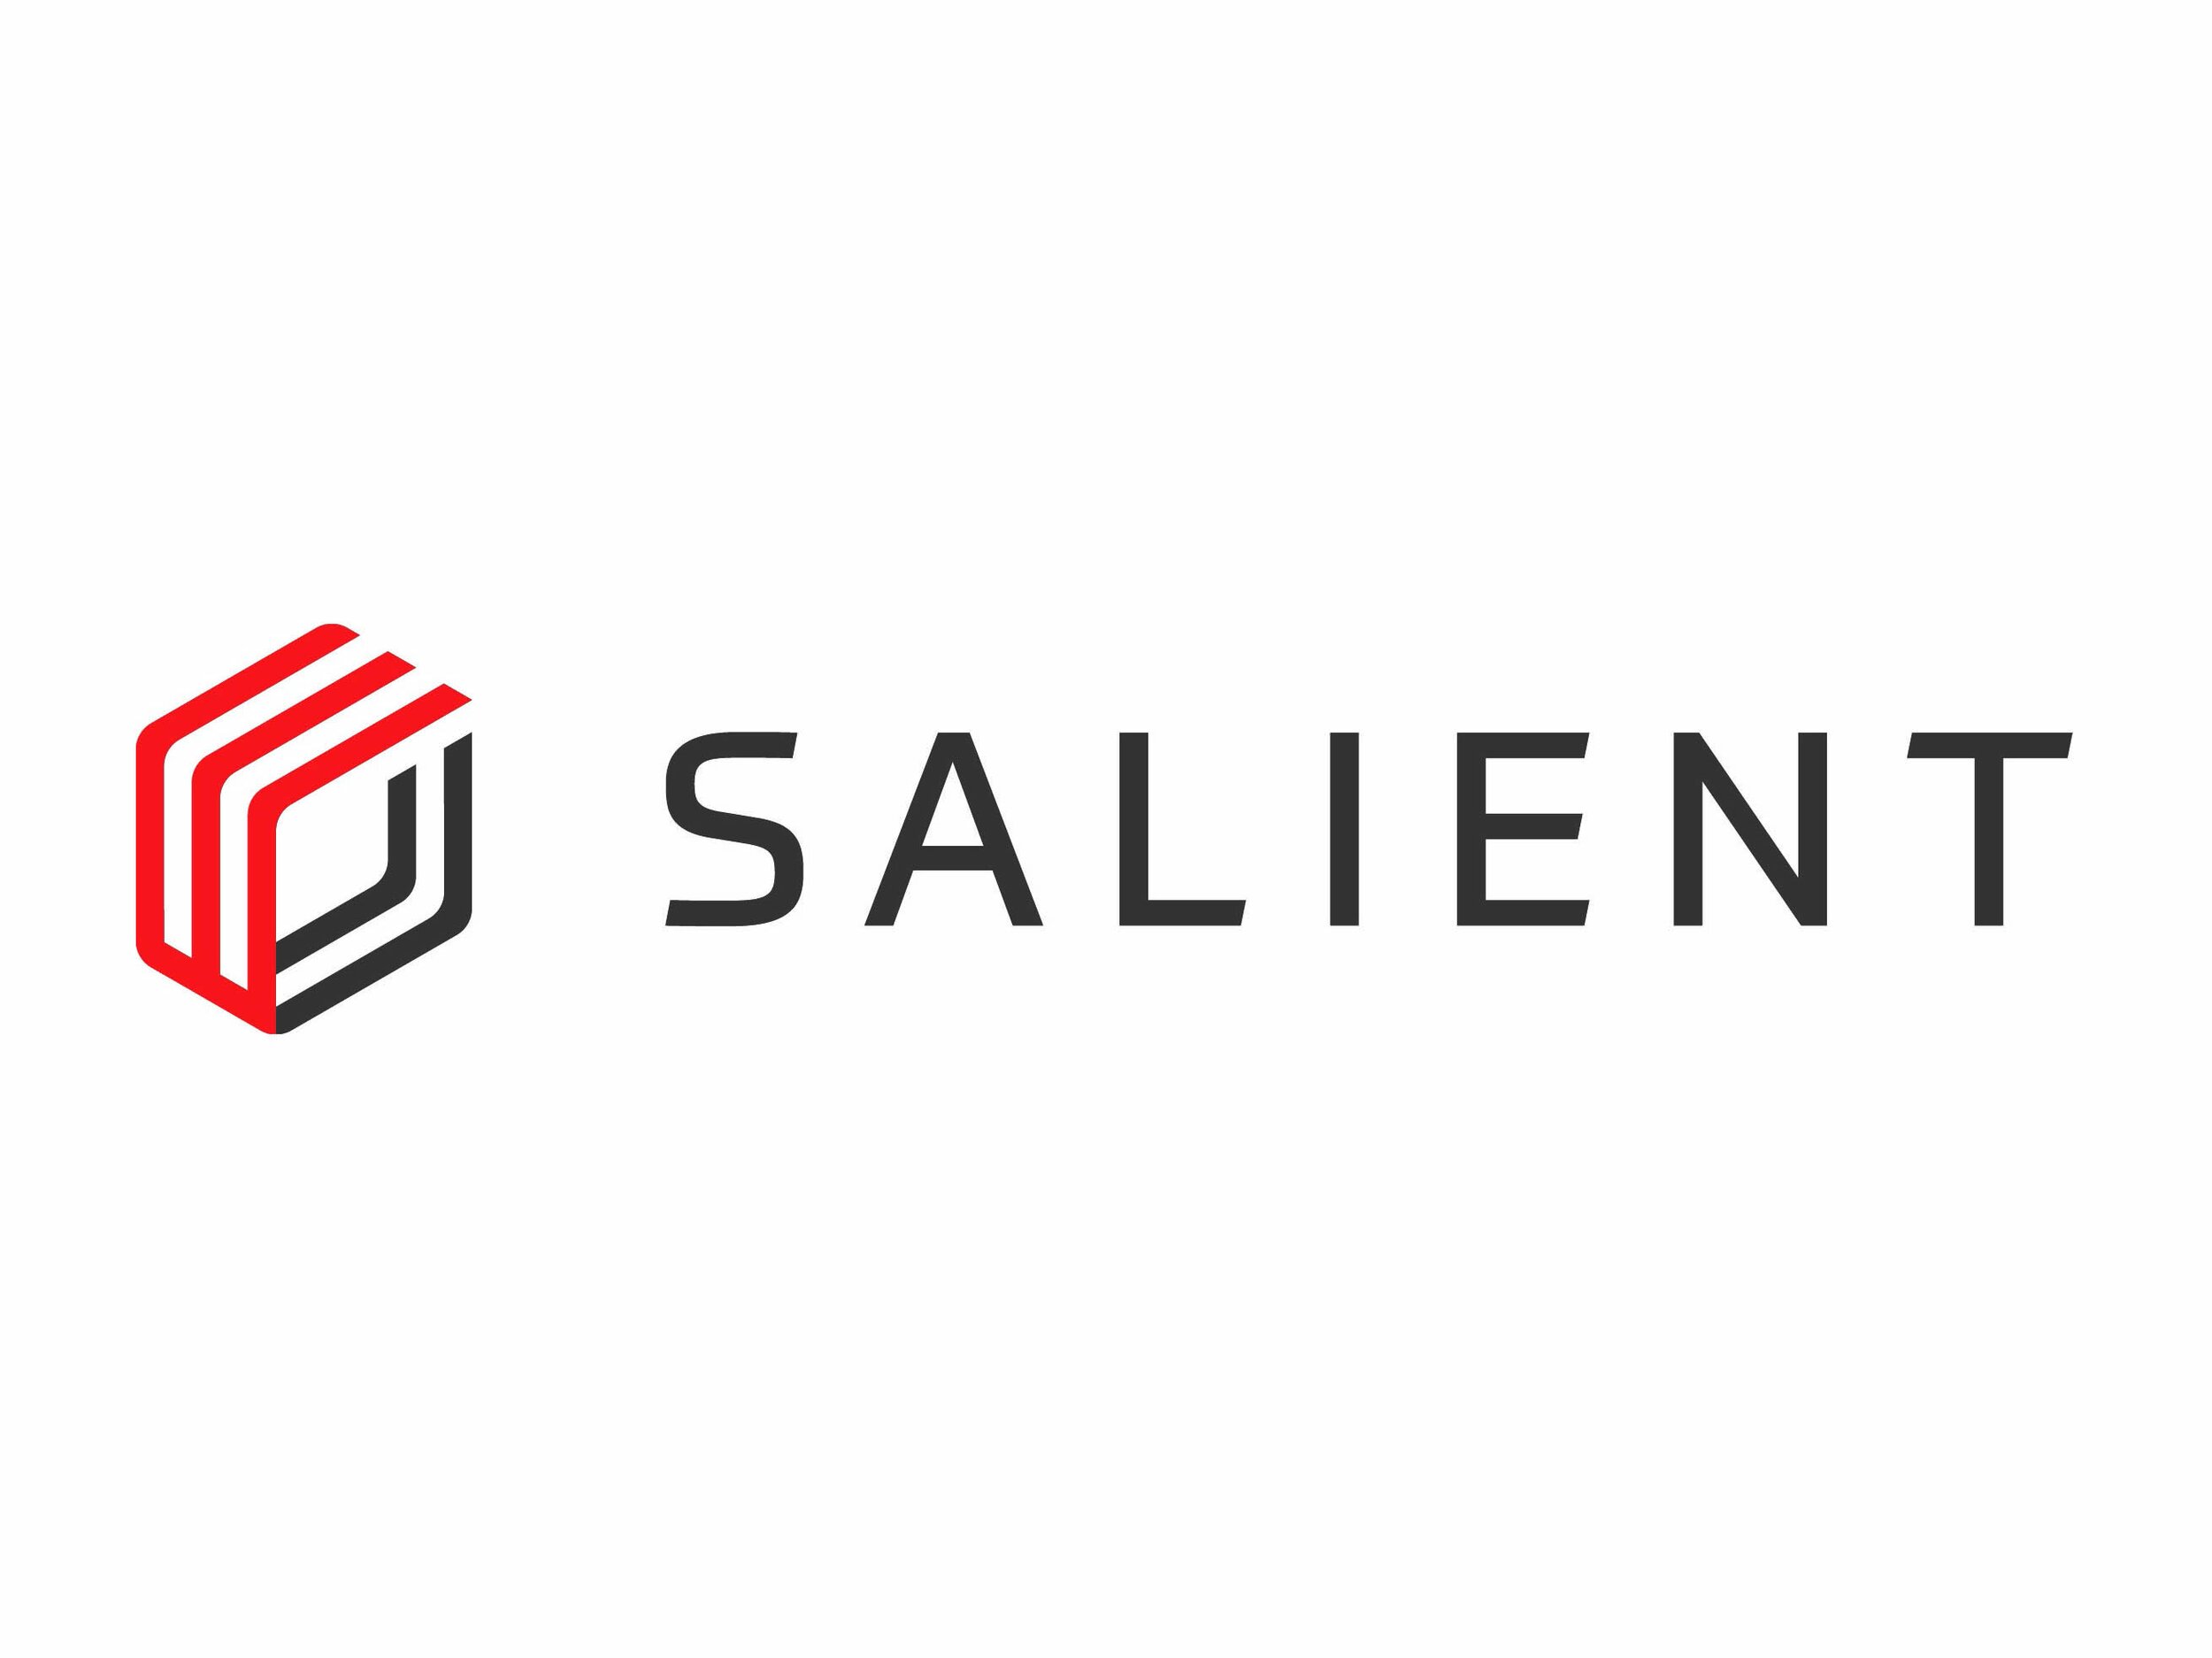 Salient Horizontal logo large 2018.jpg